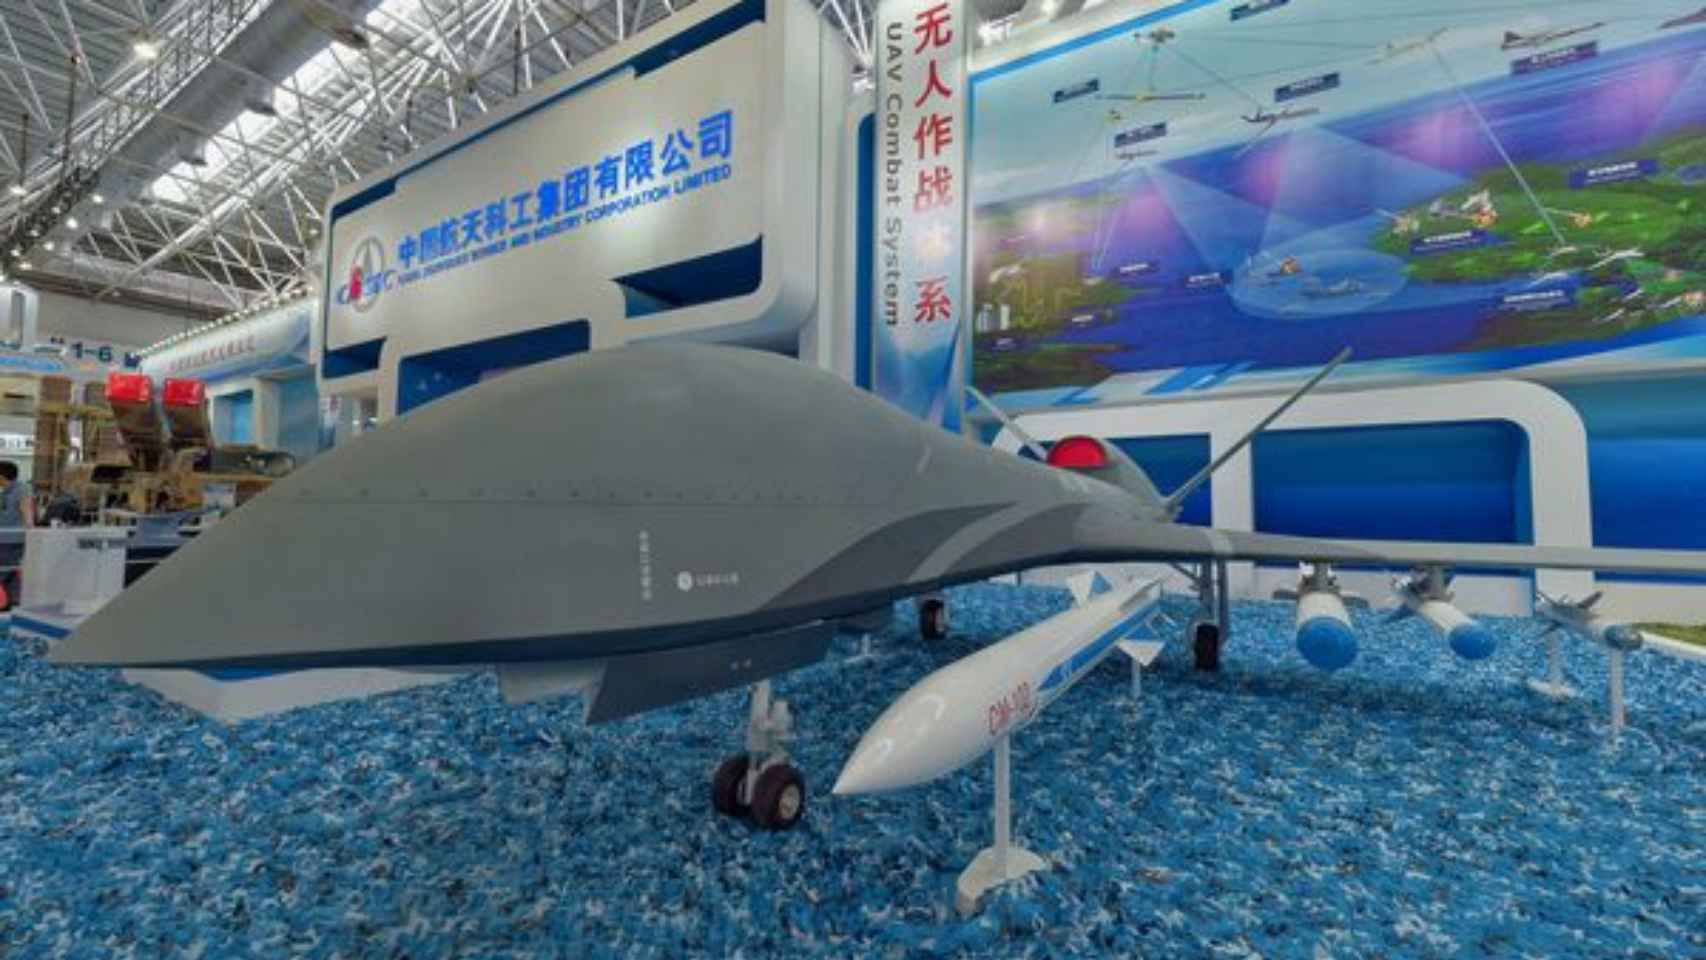 El UAV WJ-700 en la exposición Airshow China de 2018